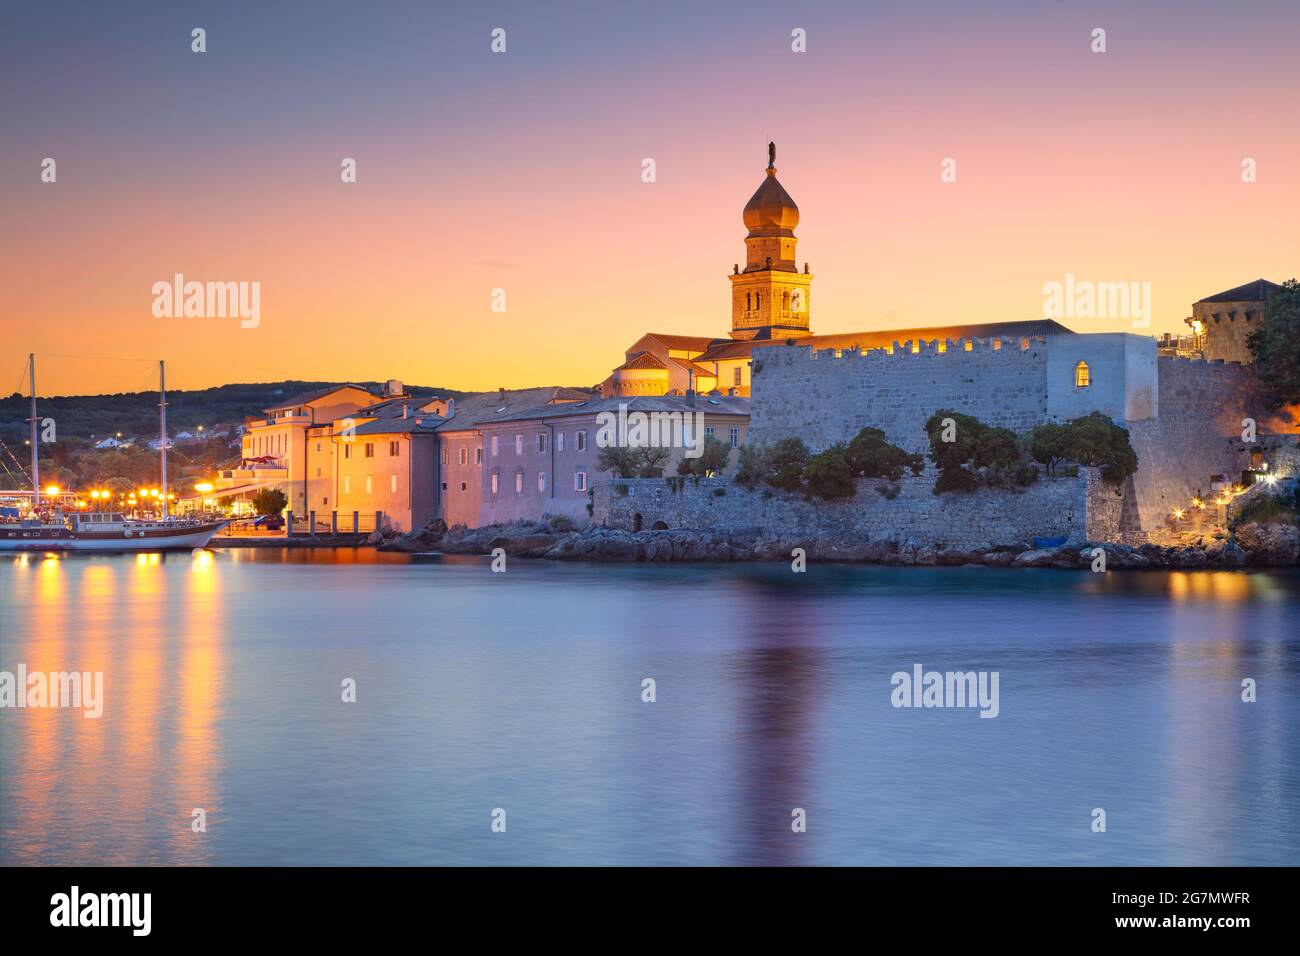 Stadt Krk, Kroatien. Stadtbild von Krk, Kroatien das Hotel liegt auf der Insel Krk mit der Kathedrale von Krk bei Sonnenuntergang im Sommer. Stockfoto